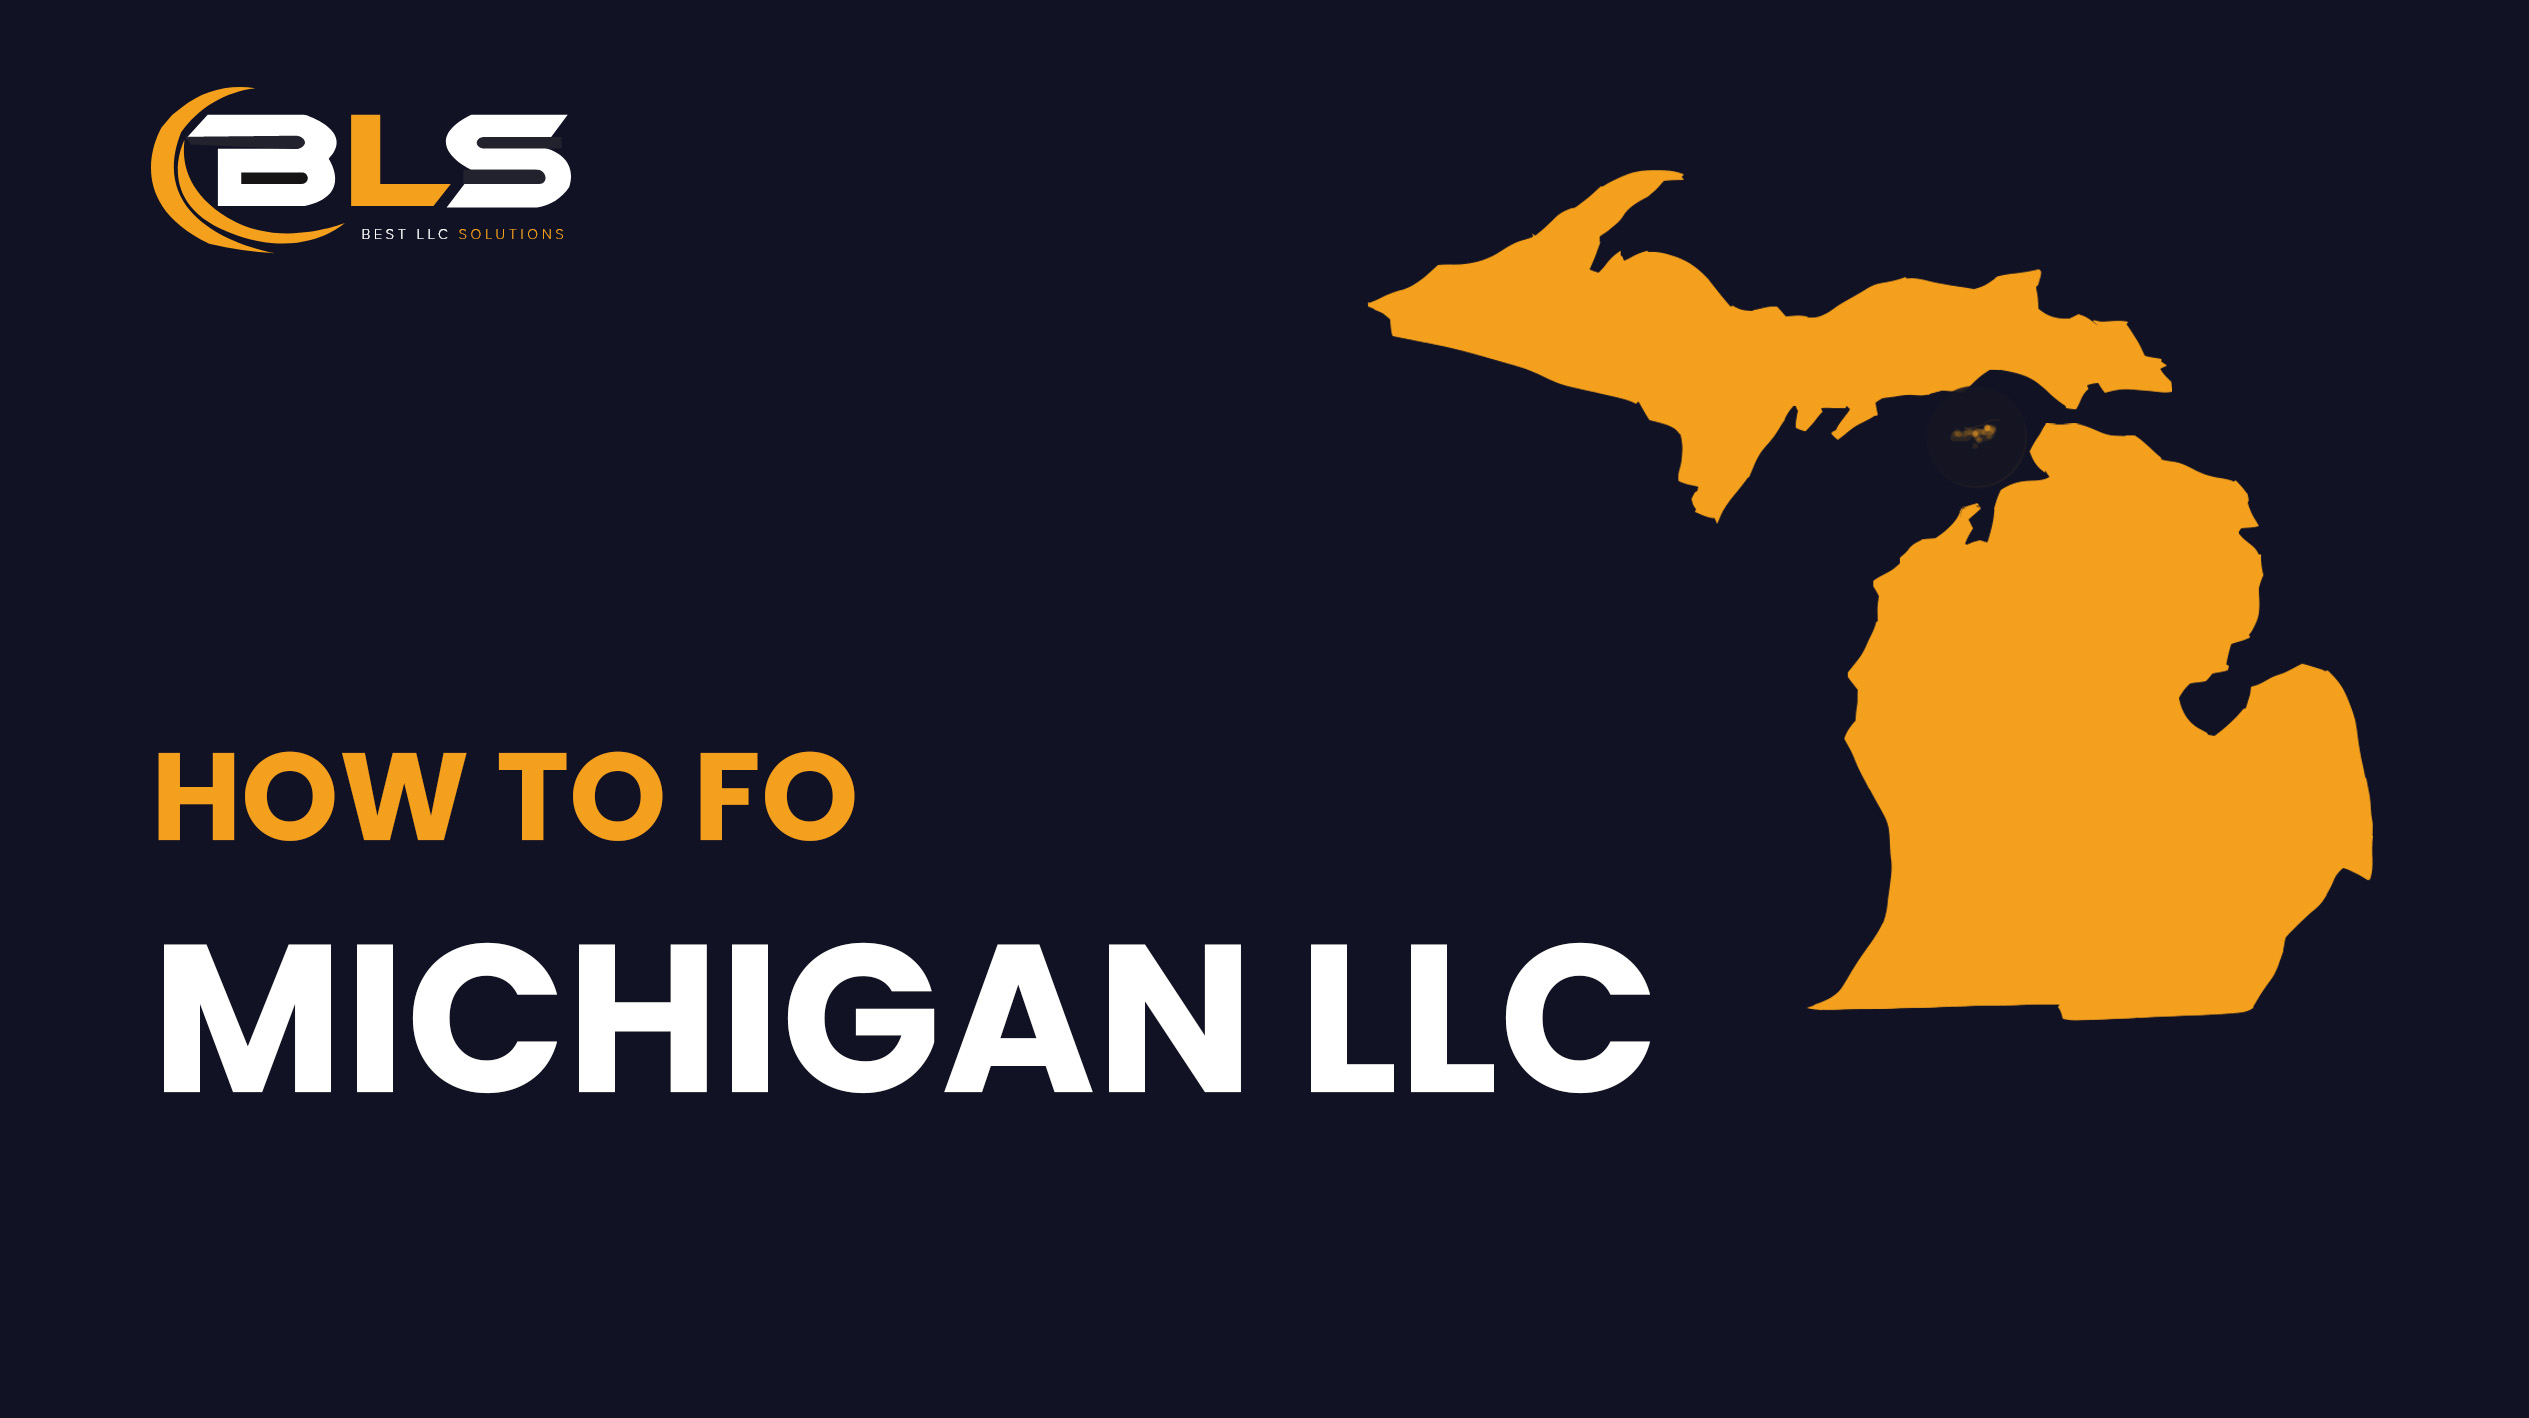 Michigan LLC